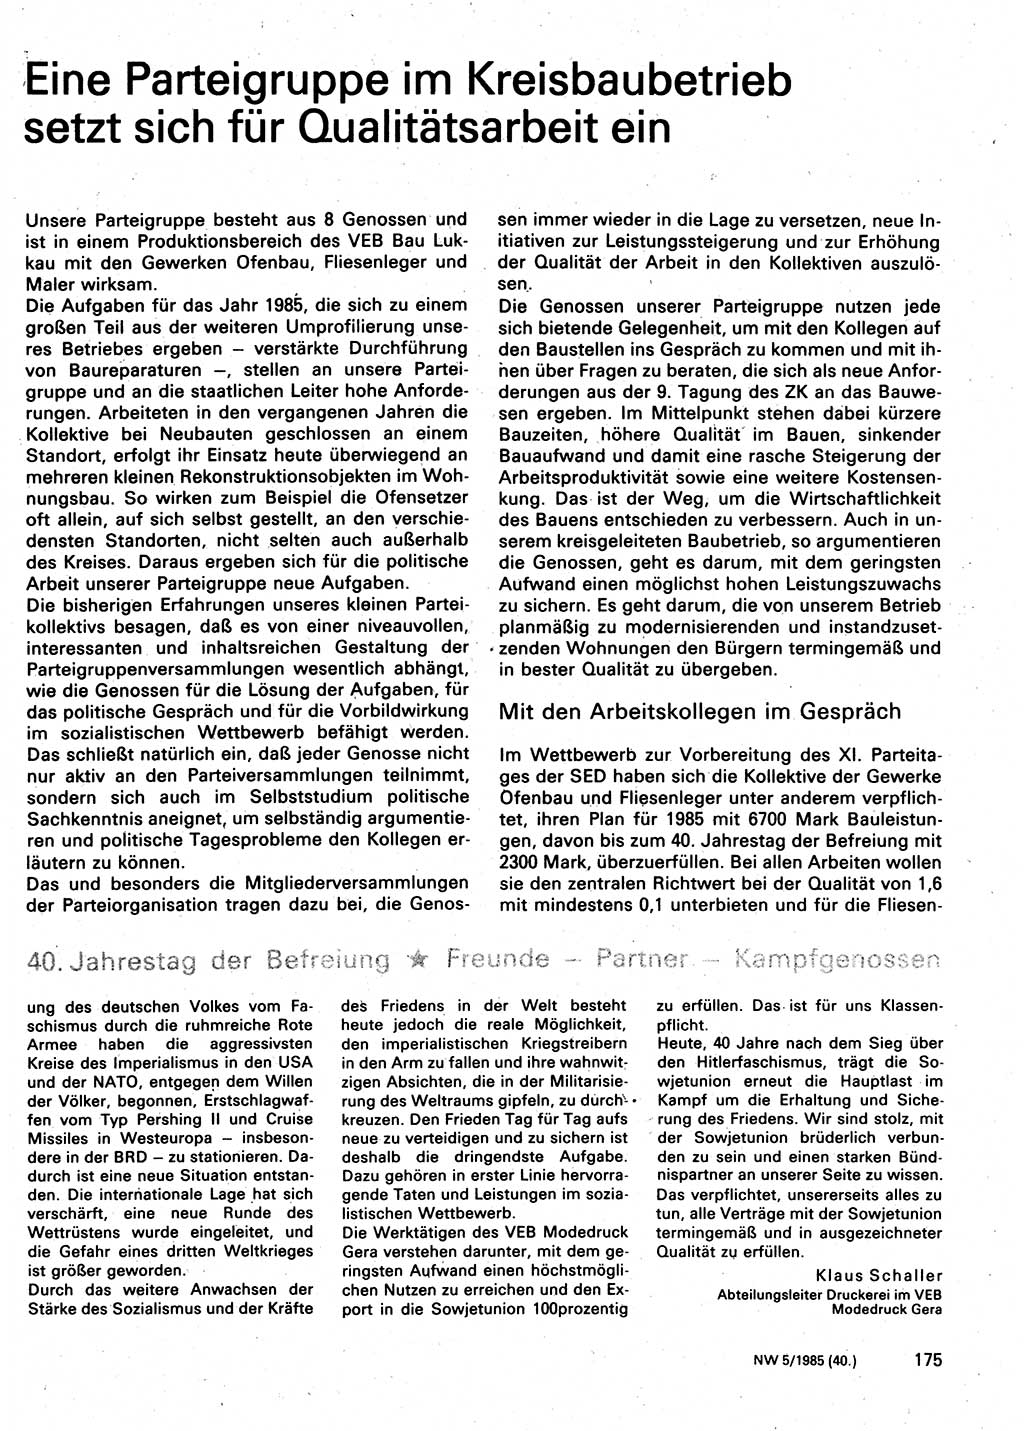 Neuer Weg (NW), Organ des Zentralkomitees (ZK) der SED (Sozialistische Einheitspartei Deutschlands) für Fragen des Parteilebens, 40. Jahrgang [Deutsche Demokratische Republik (DDR)] 1985, Seite 175 (NW ZK SED DDR 1985, S. 175)